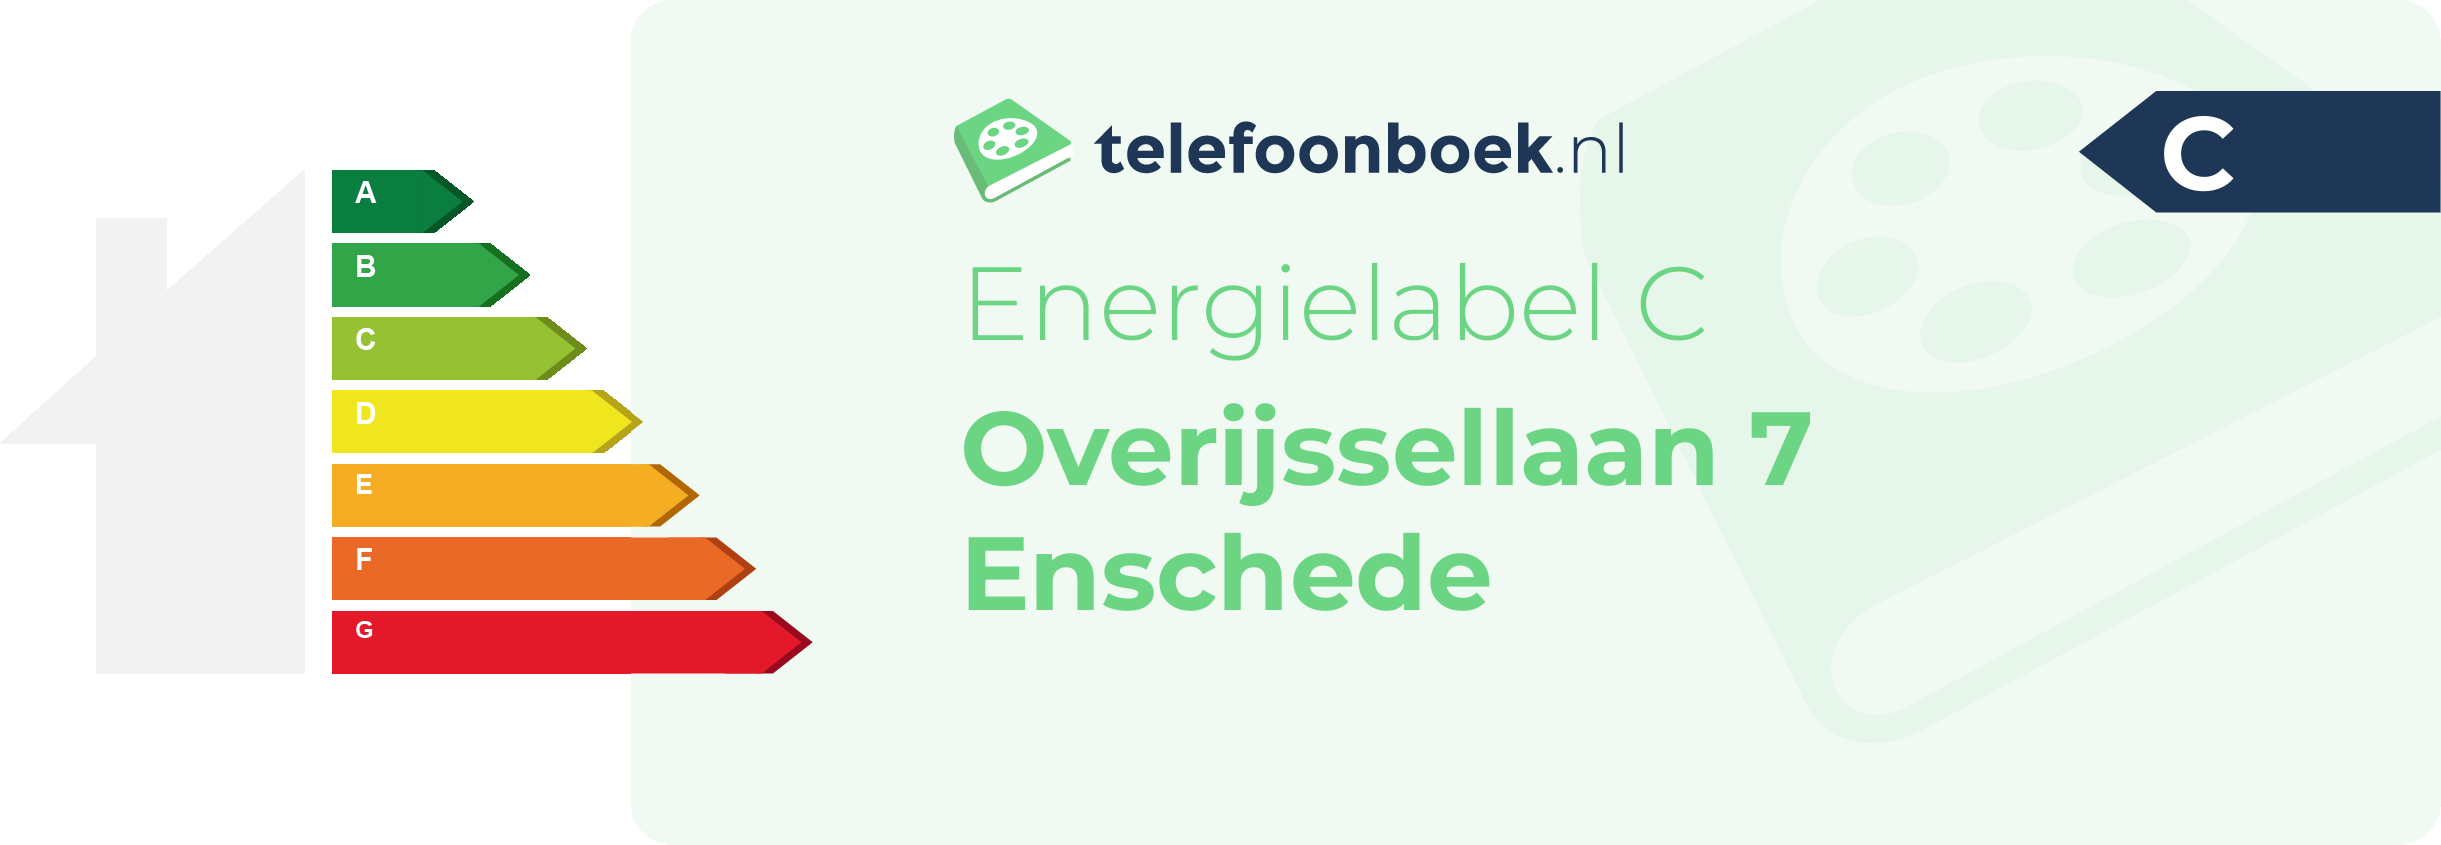 Energielabel Overijssellaan 7 Enschede